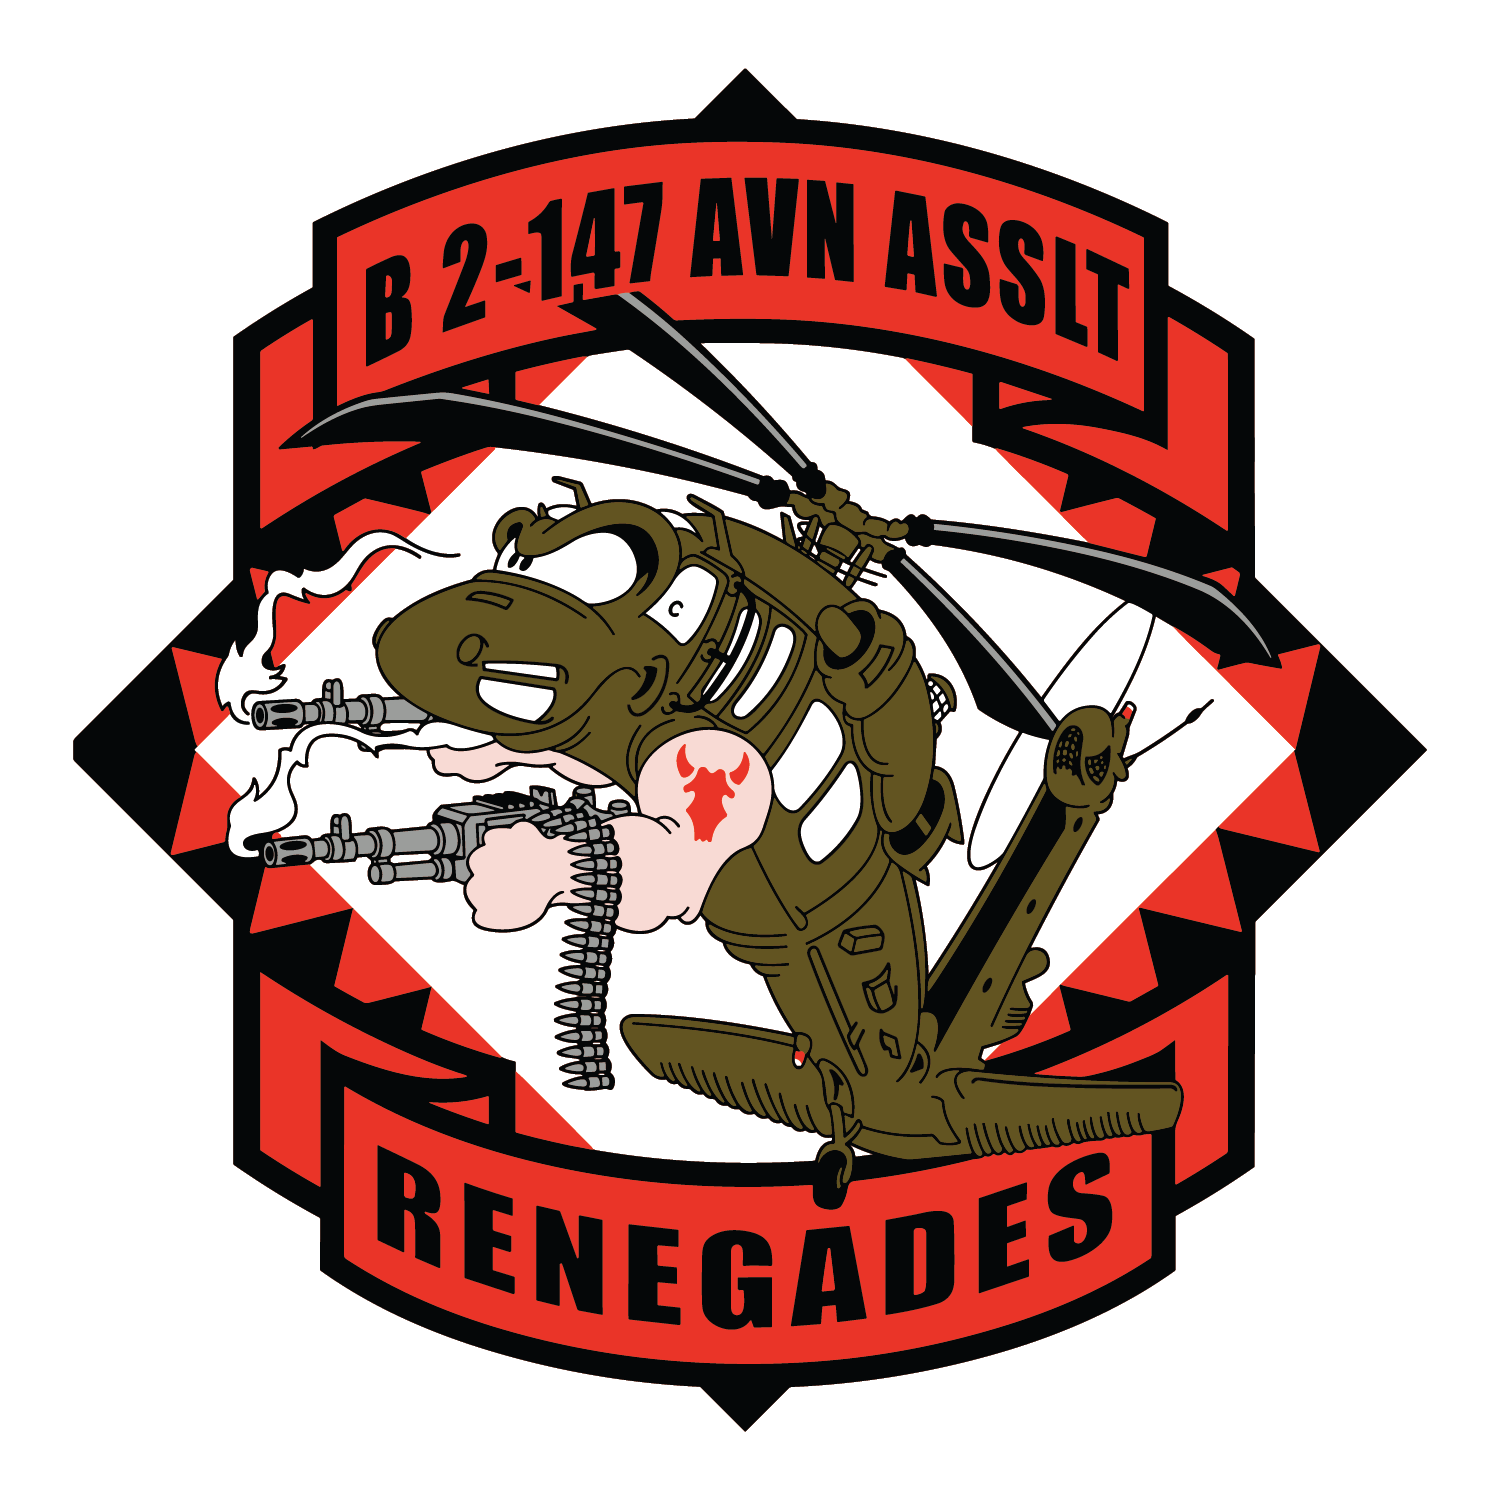 B Co, 2-147 AHB "Renegades"